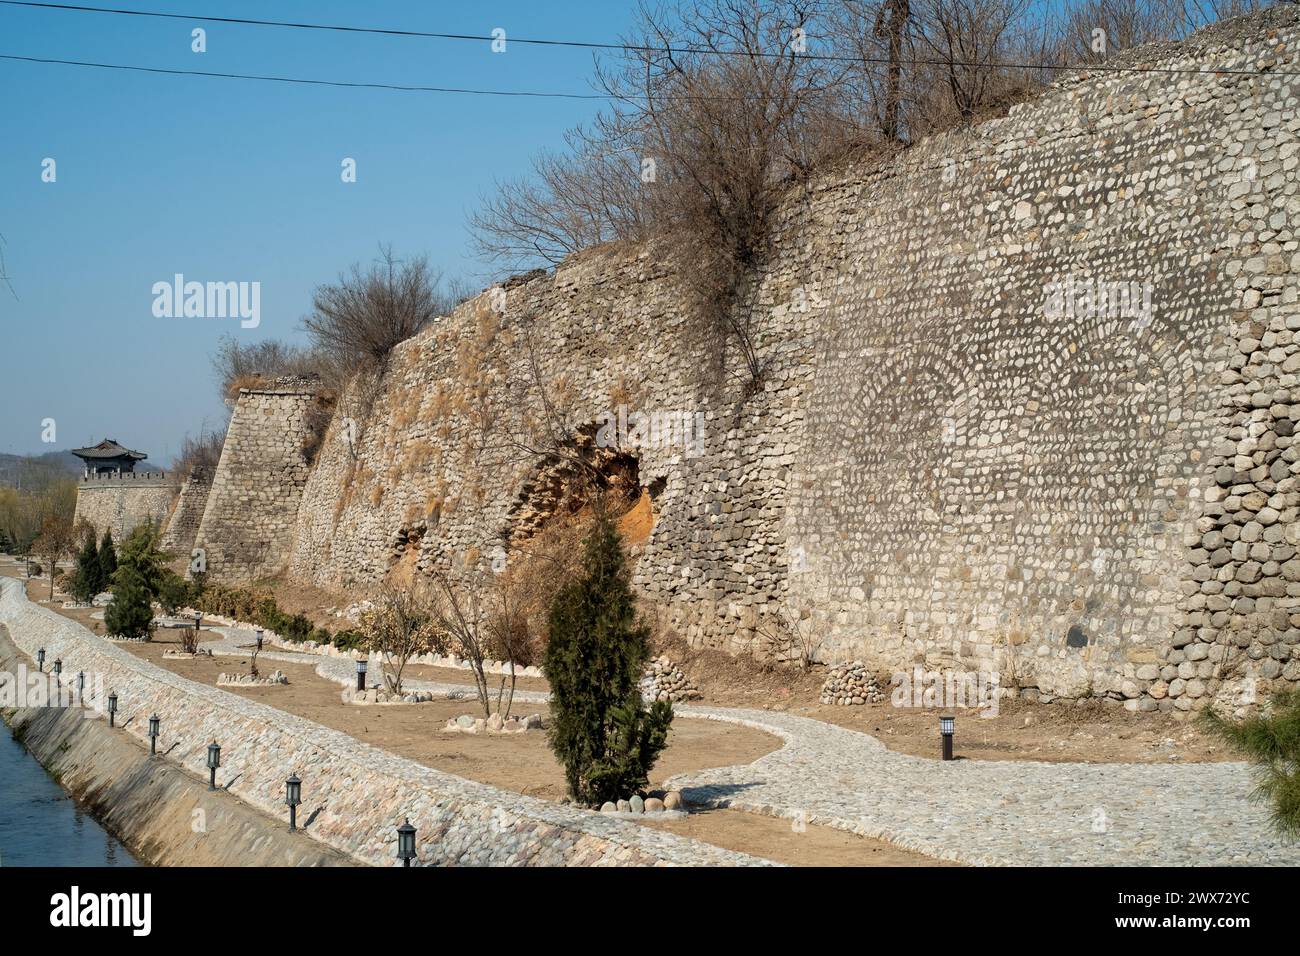 Le vieux mur de la ville de Jingxing, situé dans le comté de Jingxing, province du Hebei, en Chine, dispose d'une utilisation intensive de pavés pour la construction. Banque D'Images